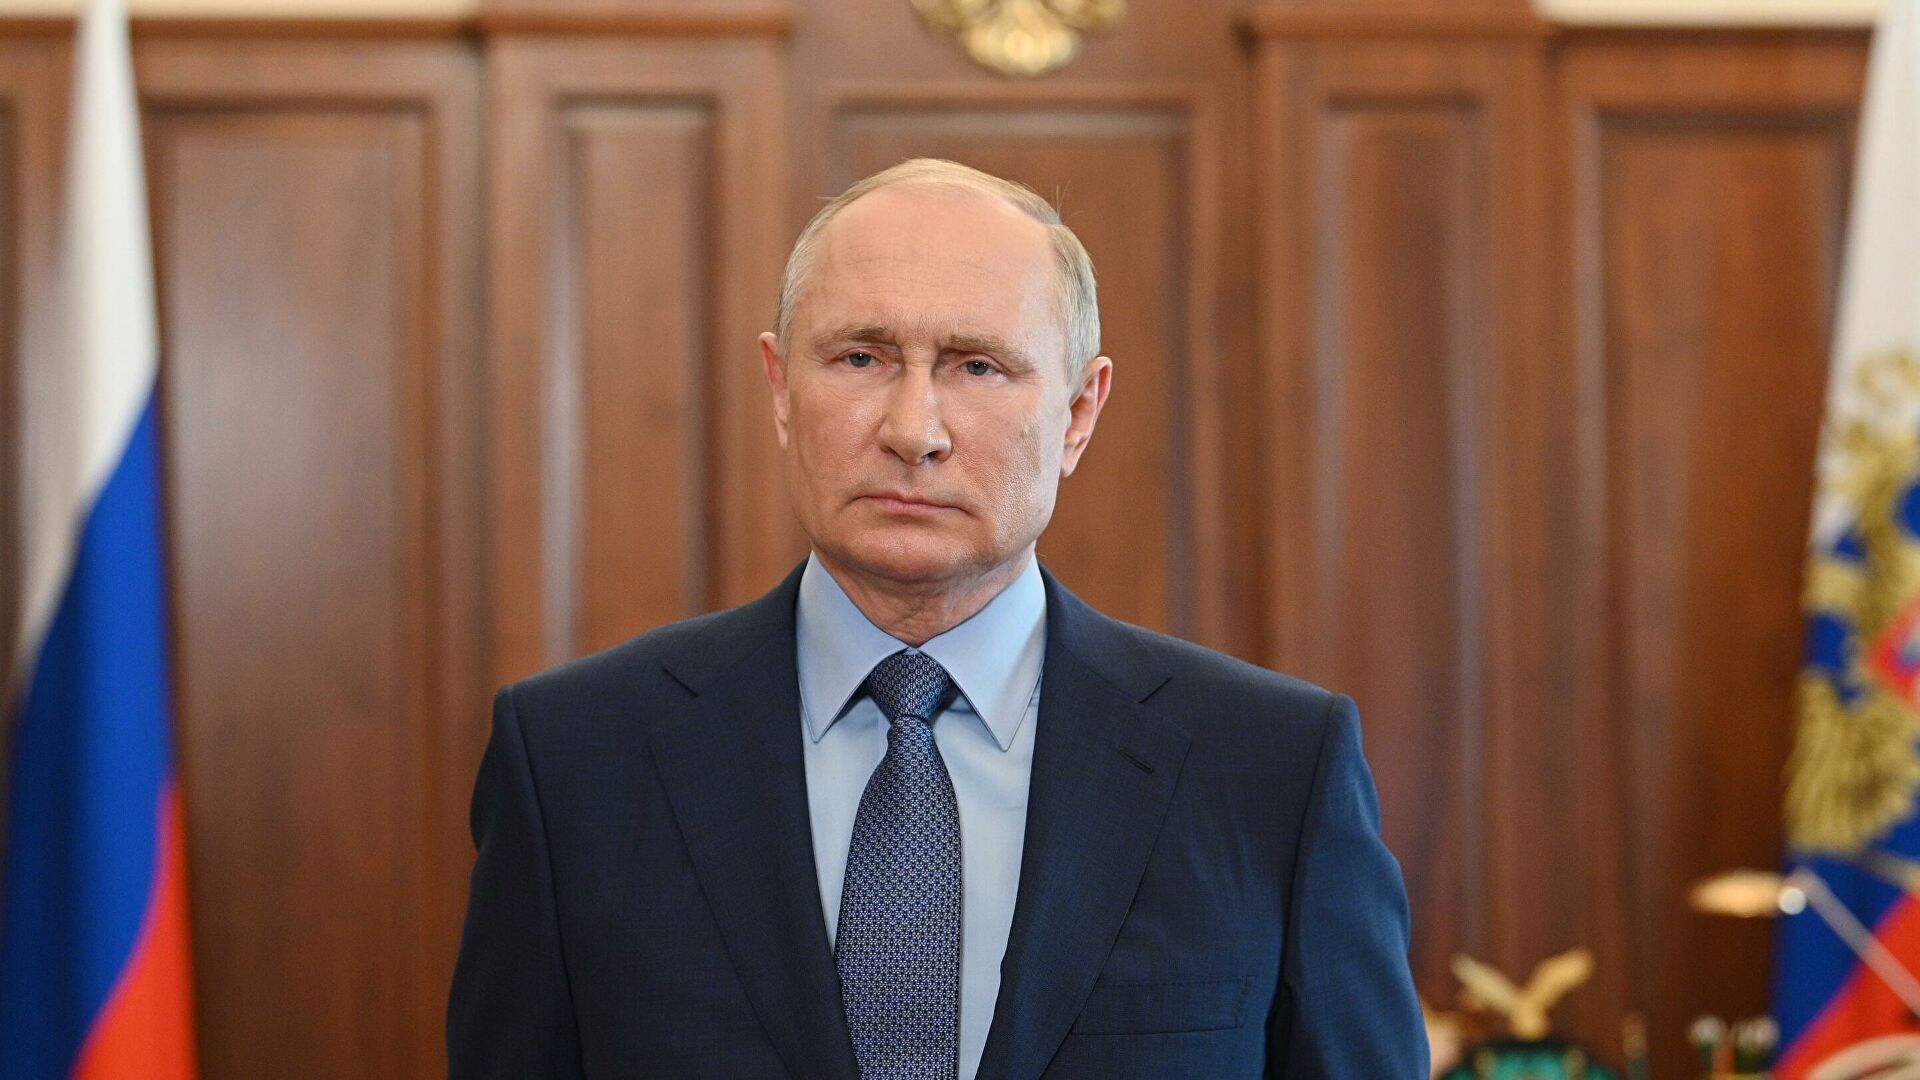 "Останнє подих влади Путіна": Forbes назвав п'ять ознак кінця режиму в РФ